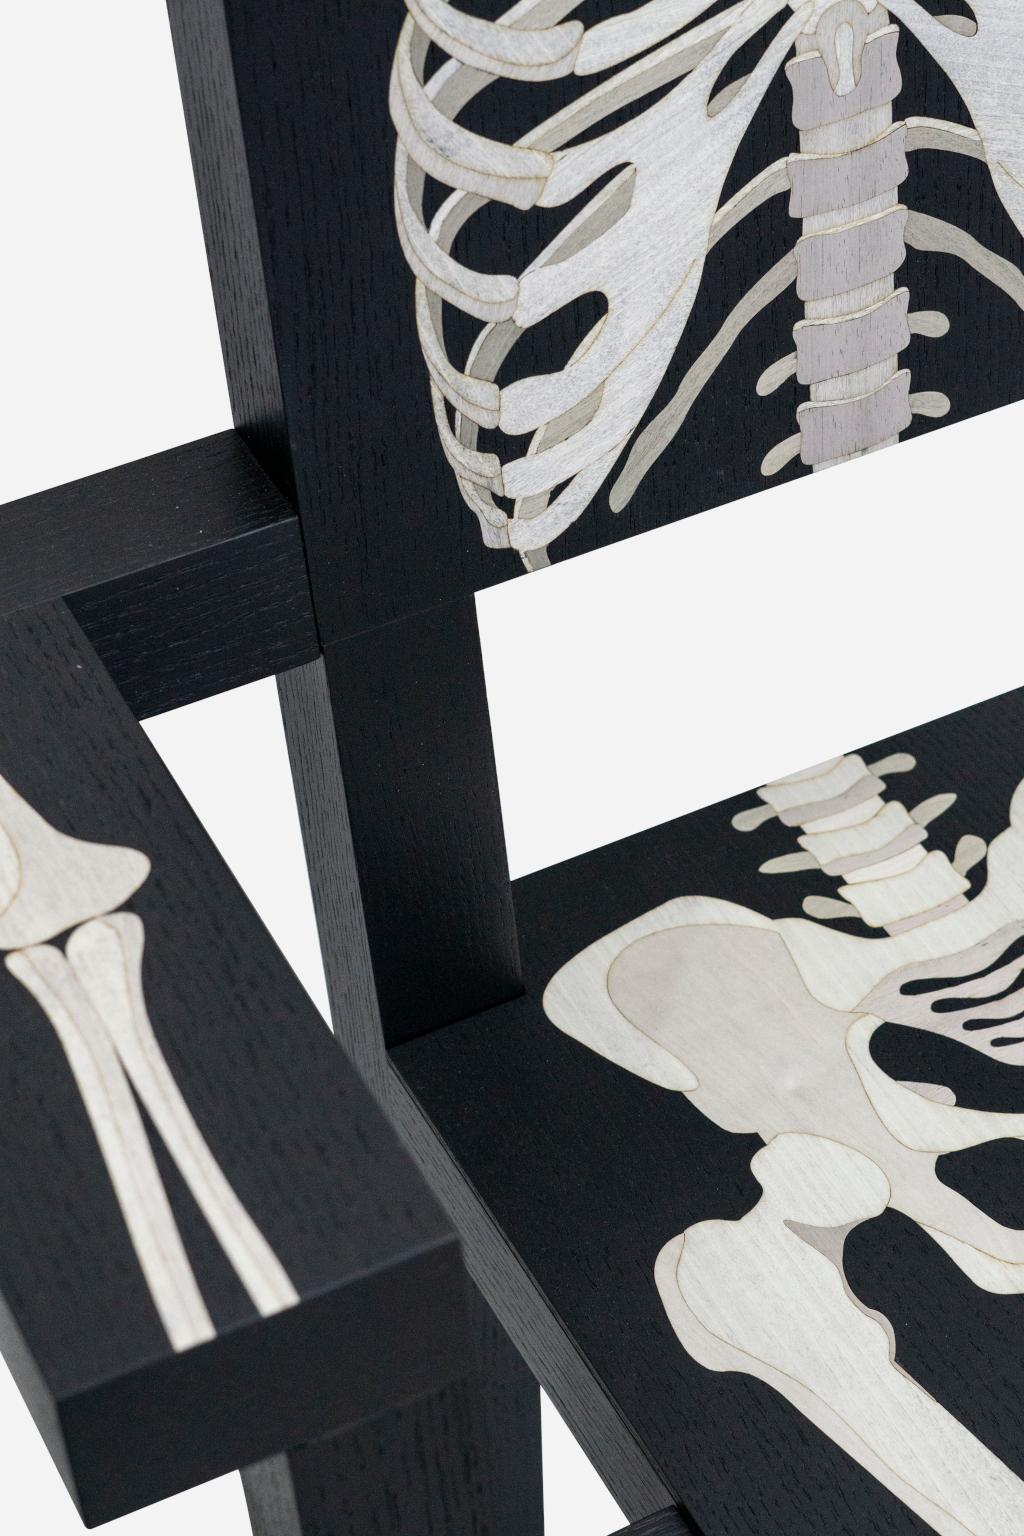 Fauteuil squelette

Skeleton chair è una sedia scultorea dalle linee rigorose nella quale vengono proiettate
les parties du corps en suivant une étude précise de l'anatomie humaine. Réalisé en bois
massiccio e con un'attitudine ironica, Skeleton